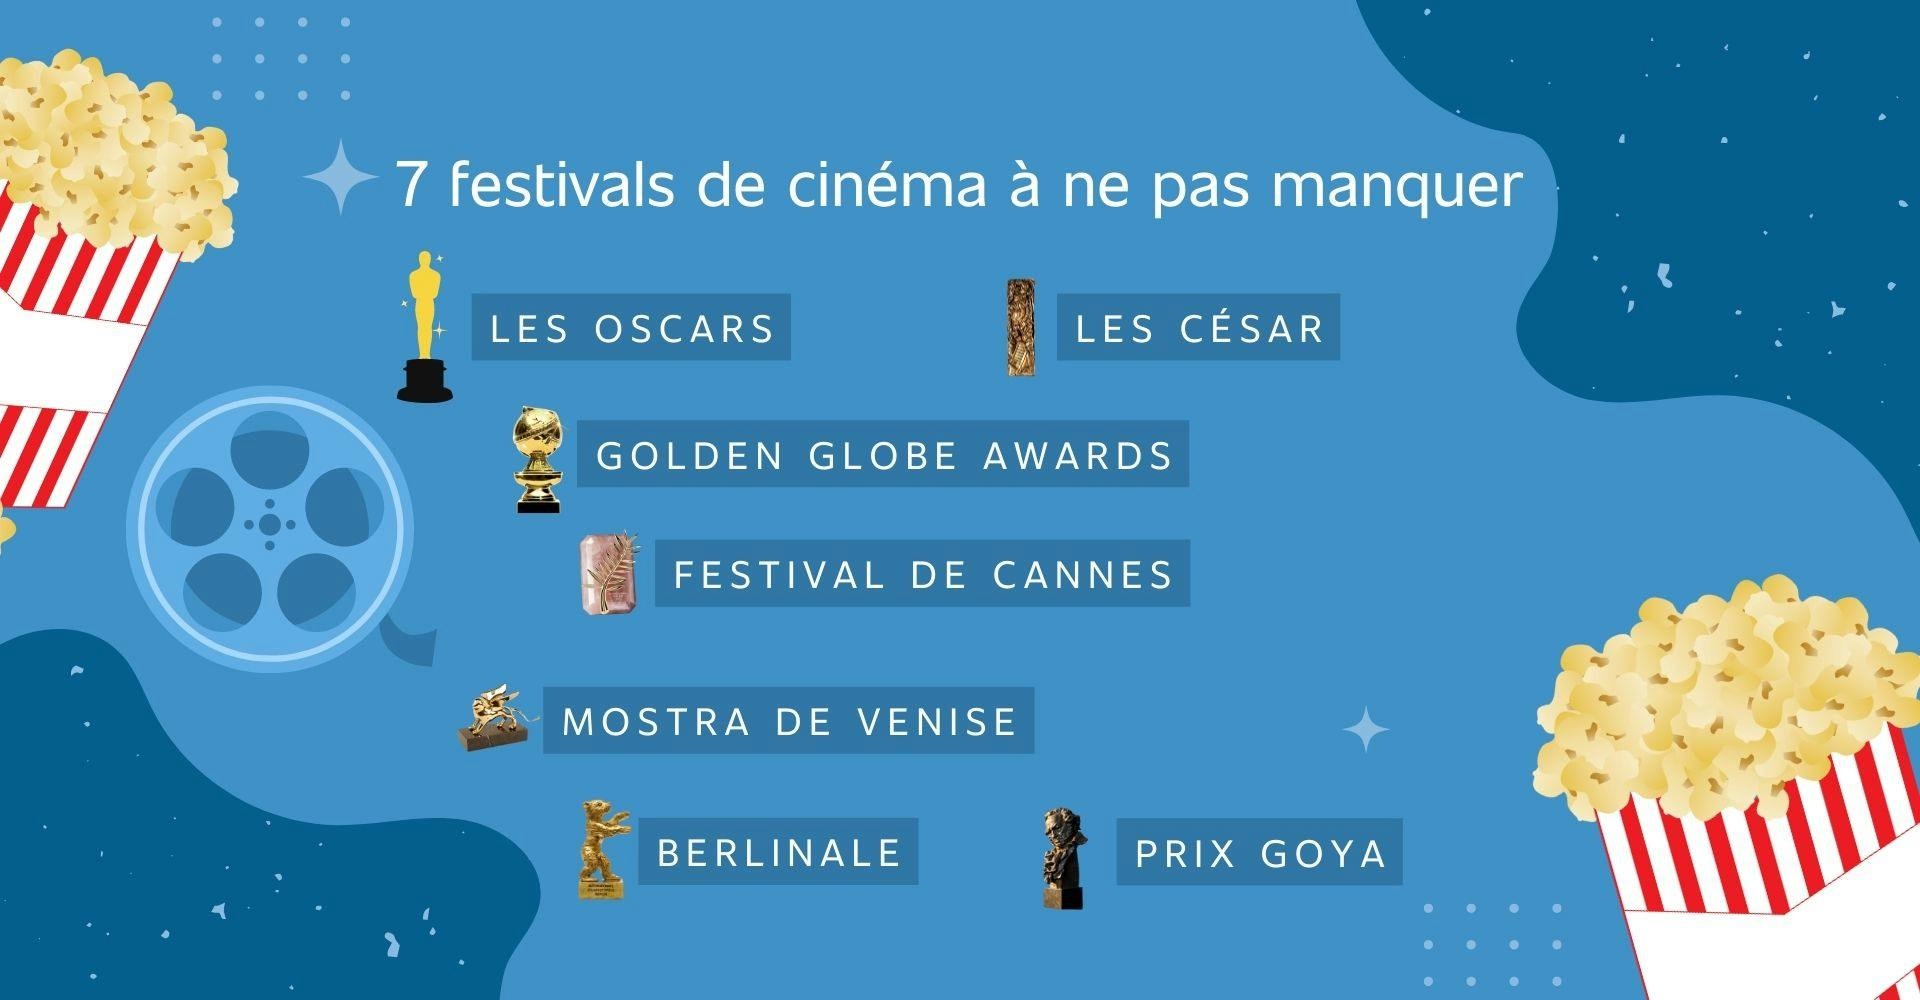 infographie sur les 7 festivals de cinéma les plus célèbres et leur trophées respectifs